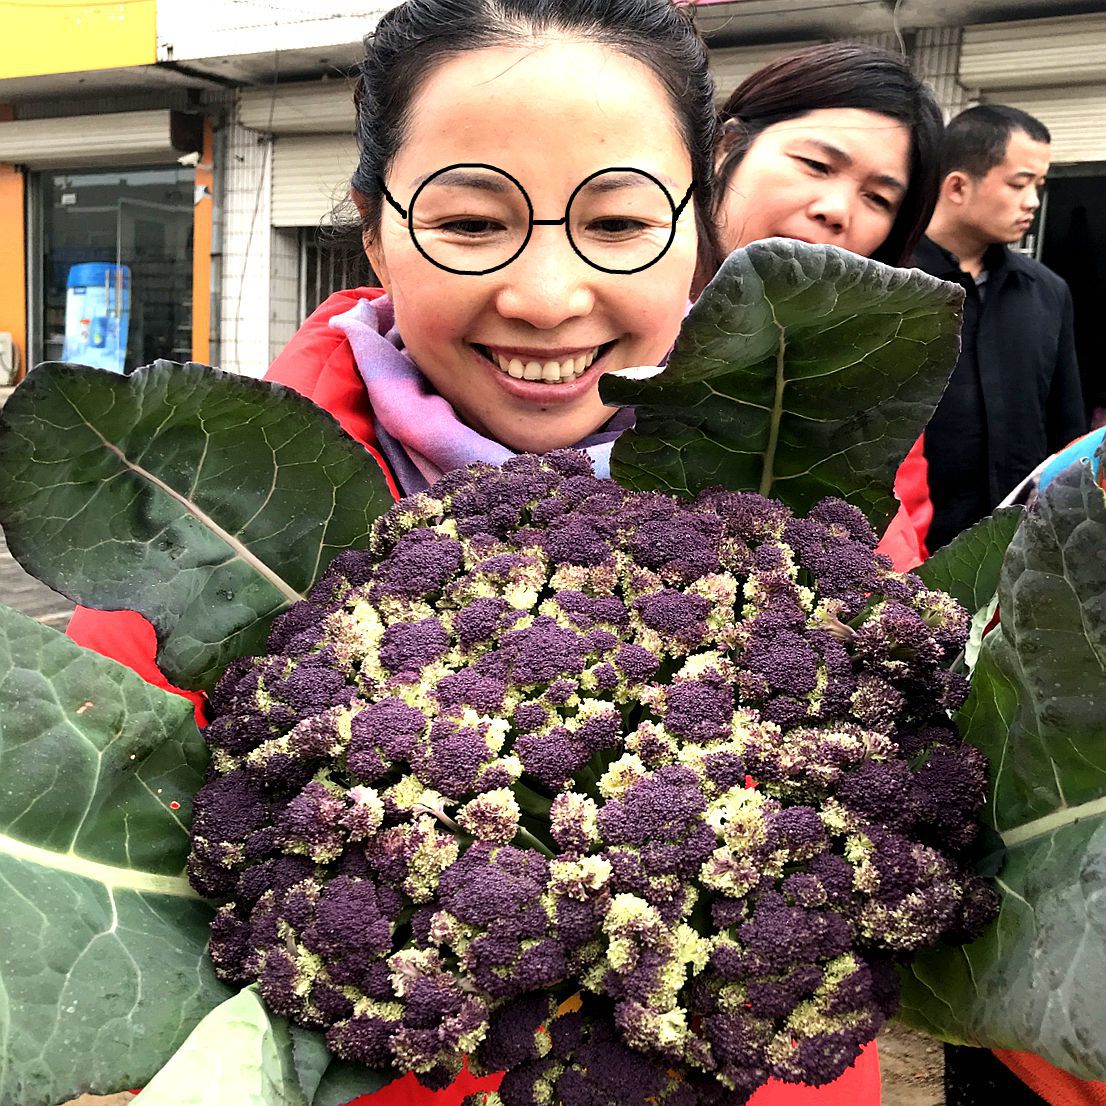 农村大集上卖一种很漂亮的紫色菜花 好多人第一次见到不敢买 斯密特